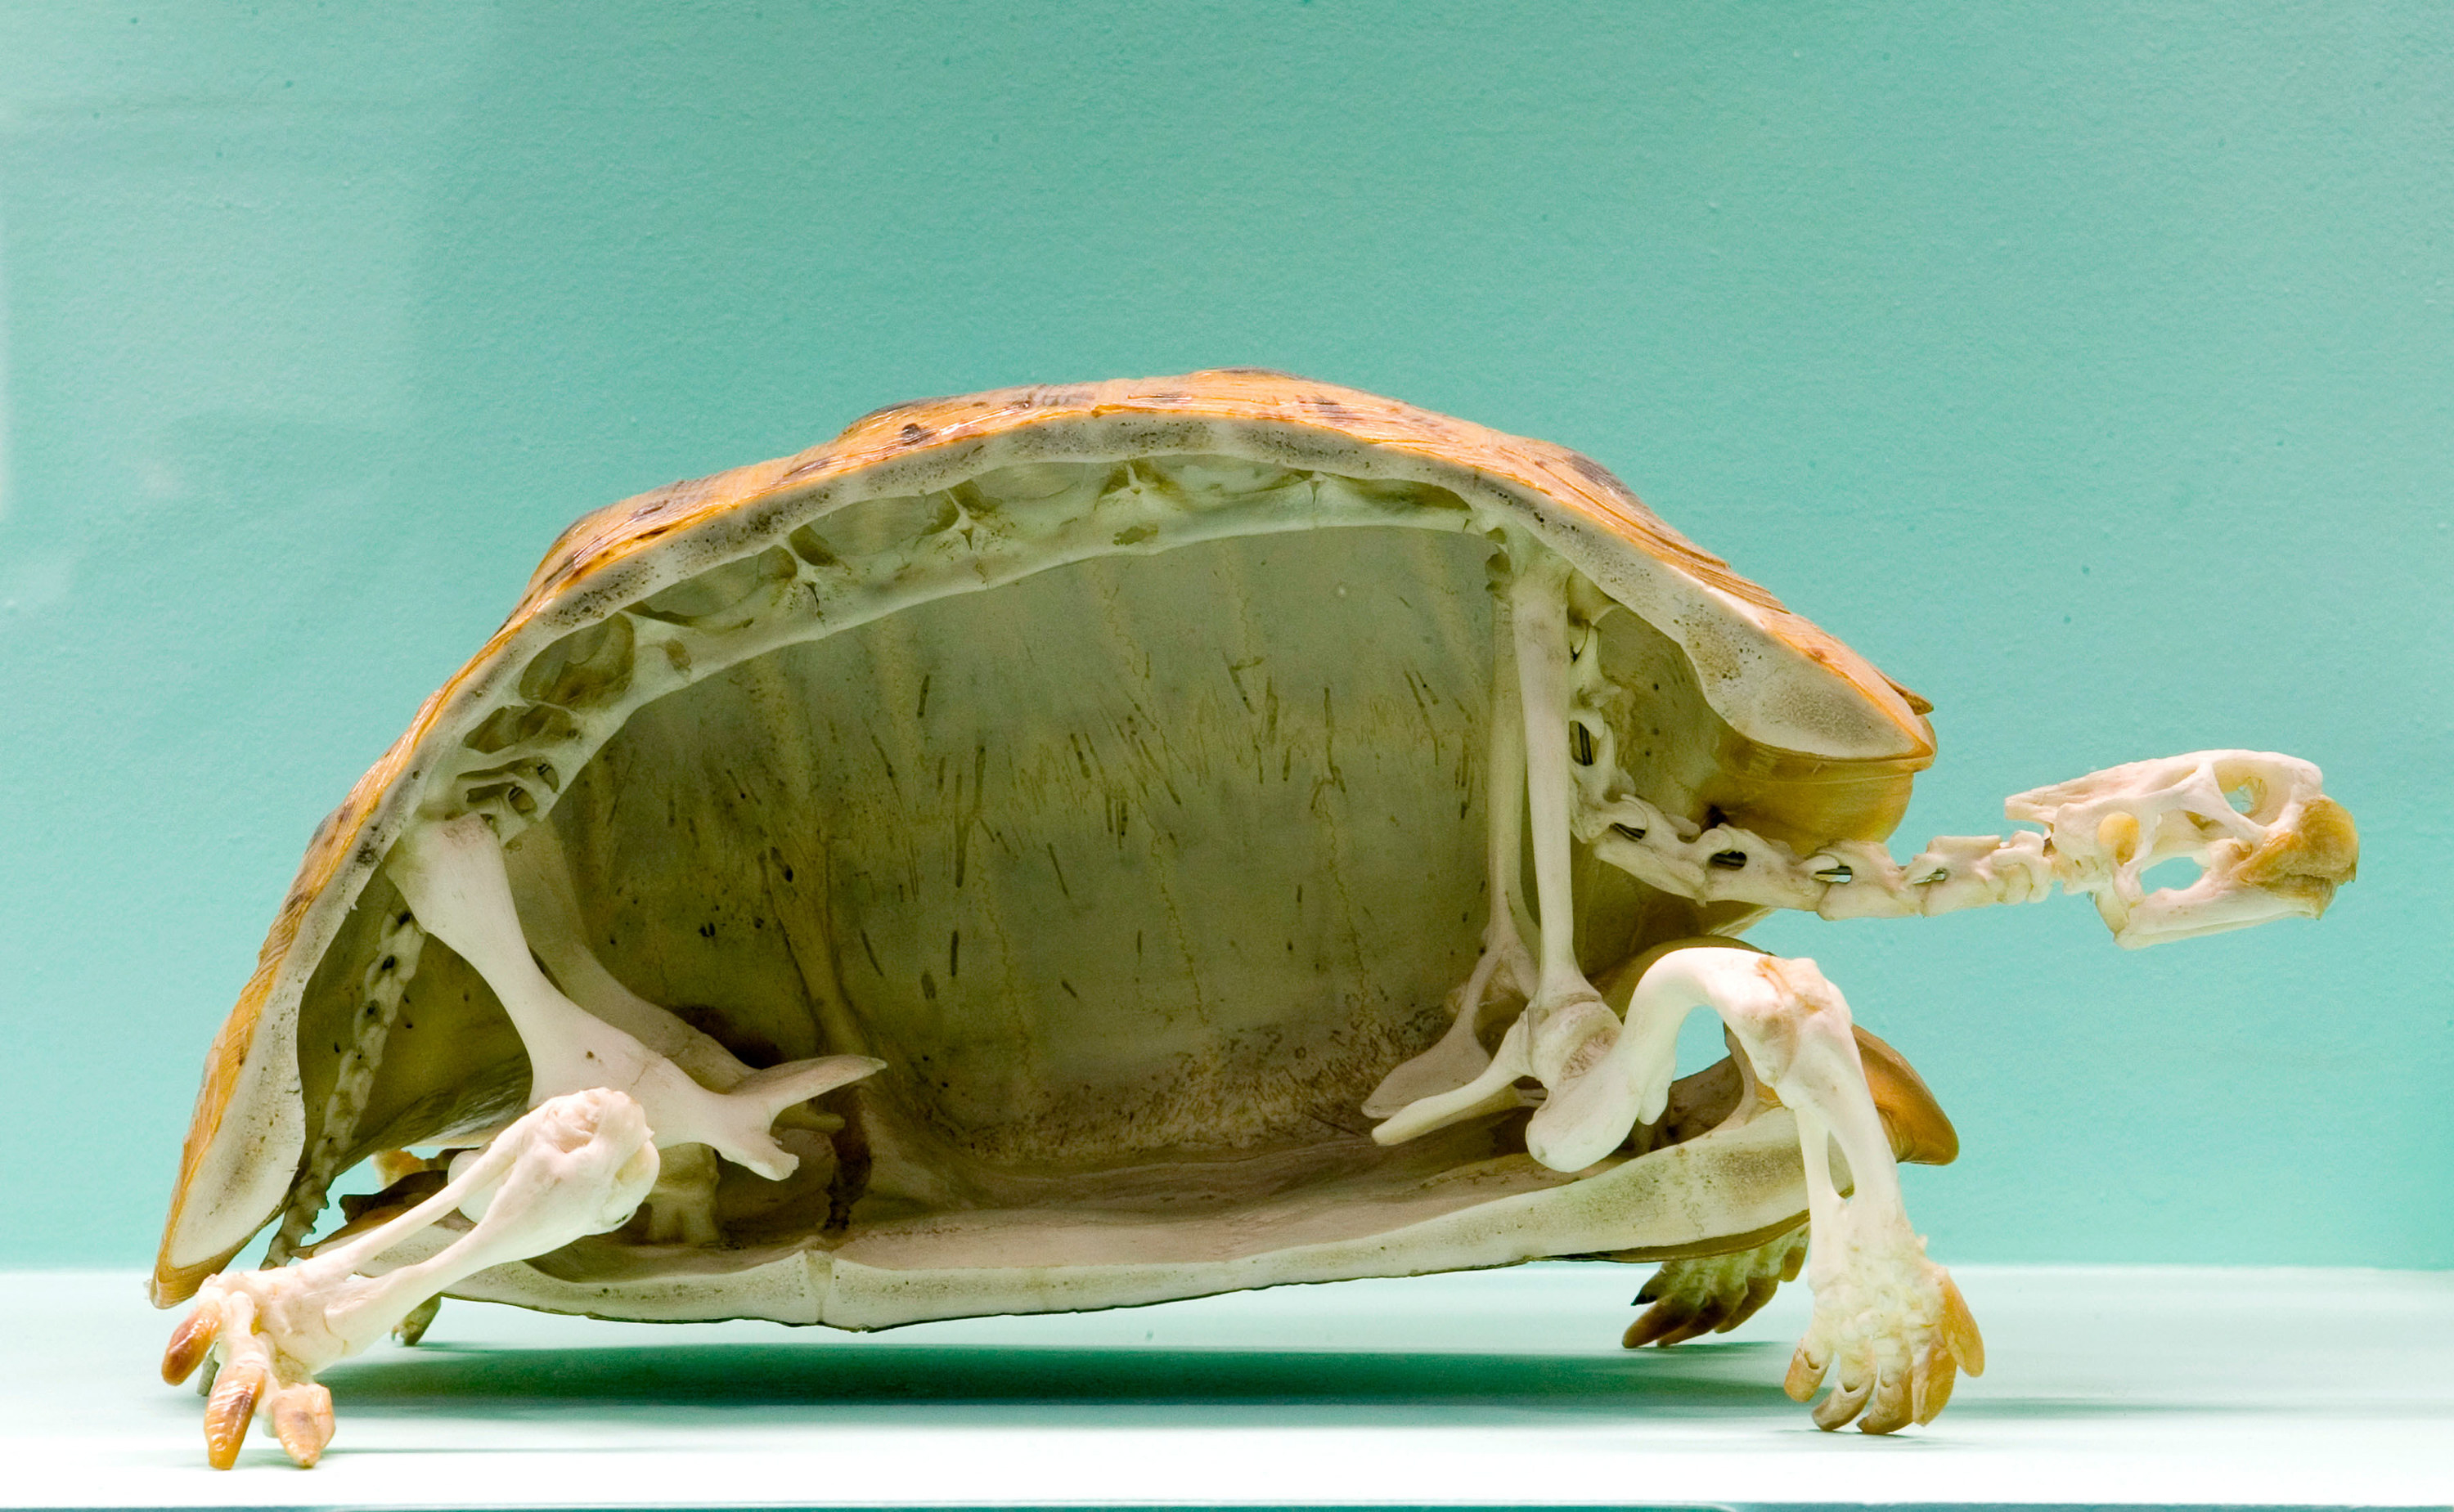 A turtle skeleton